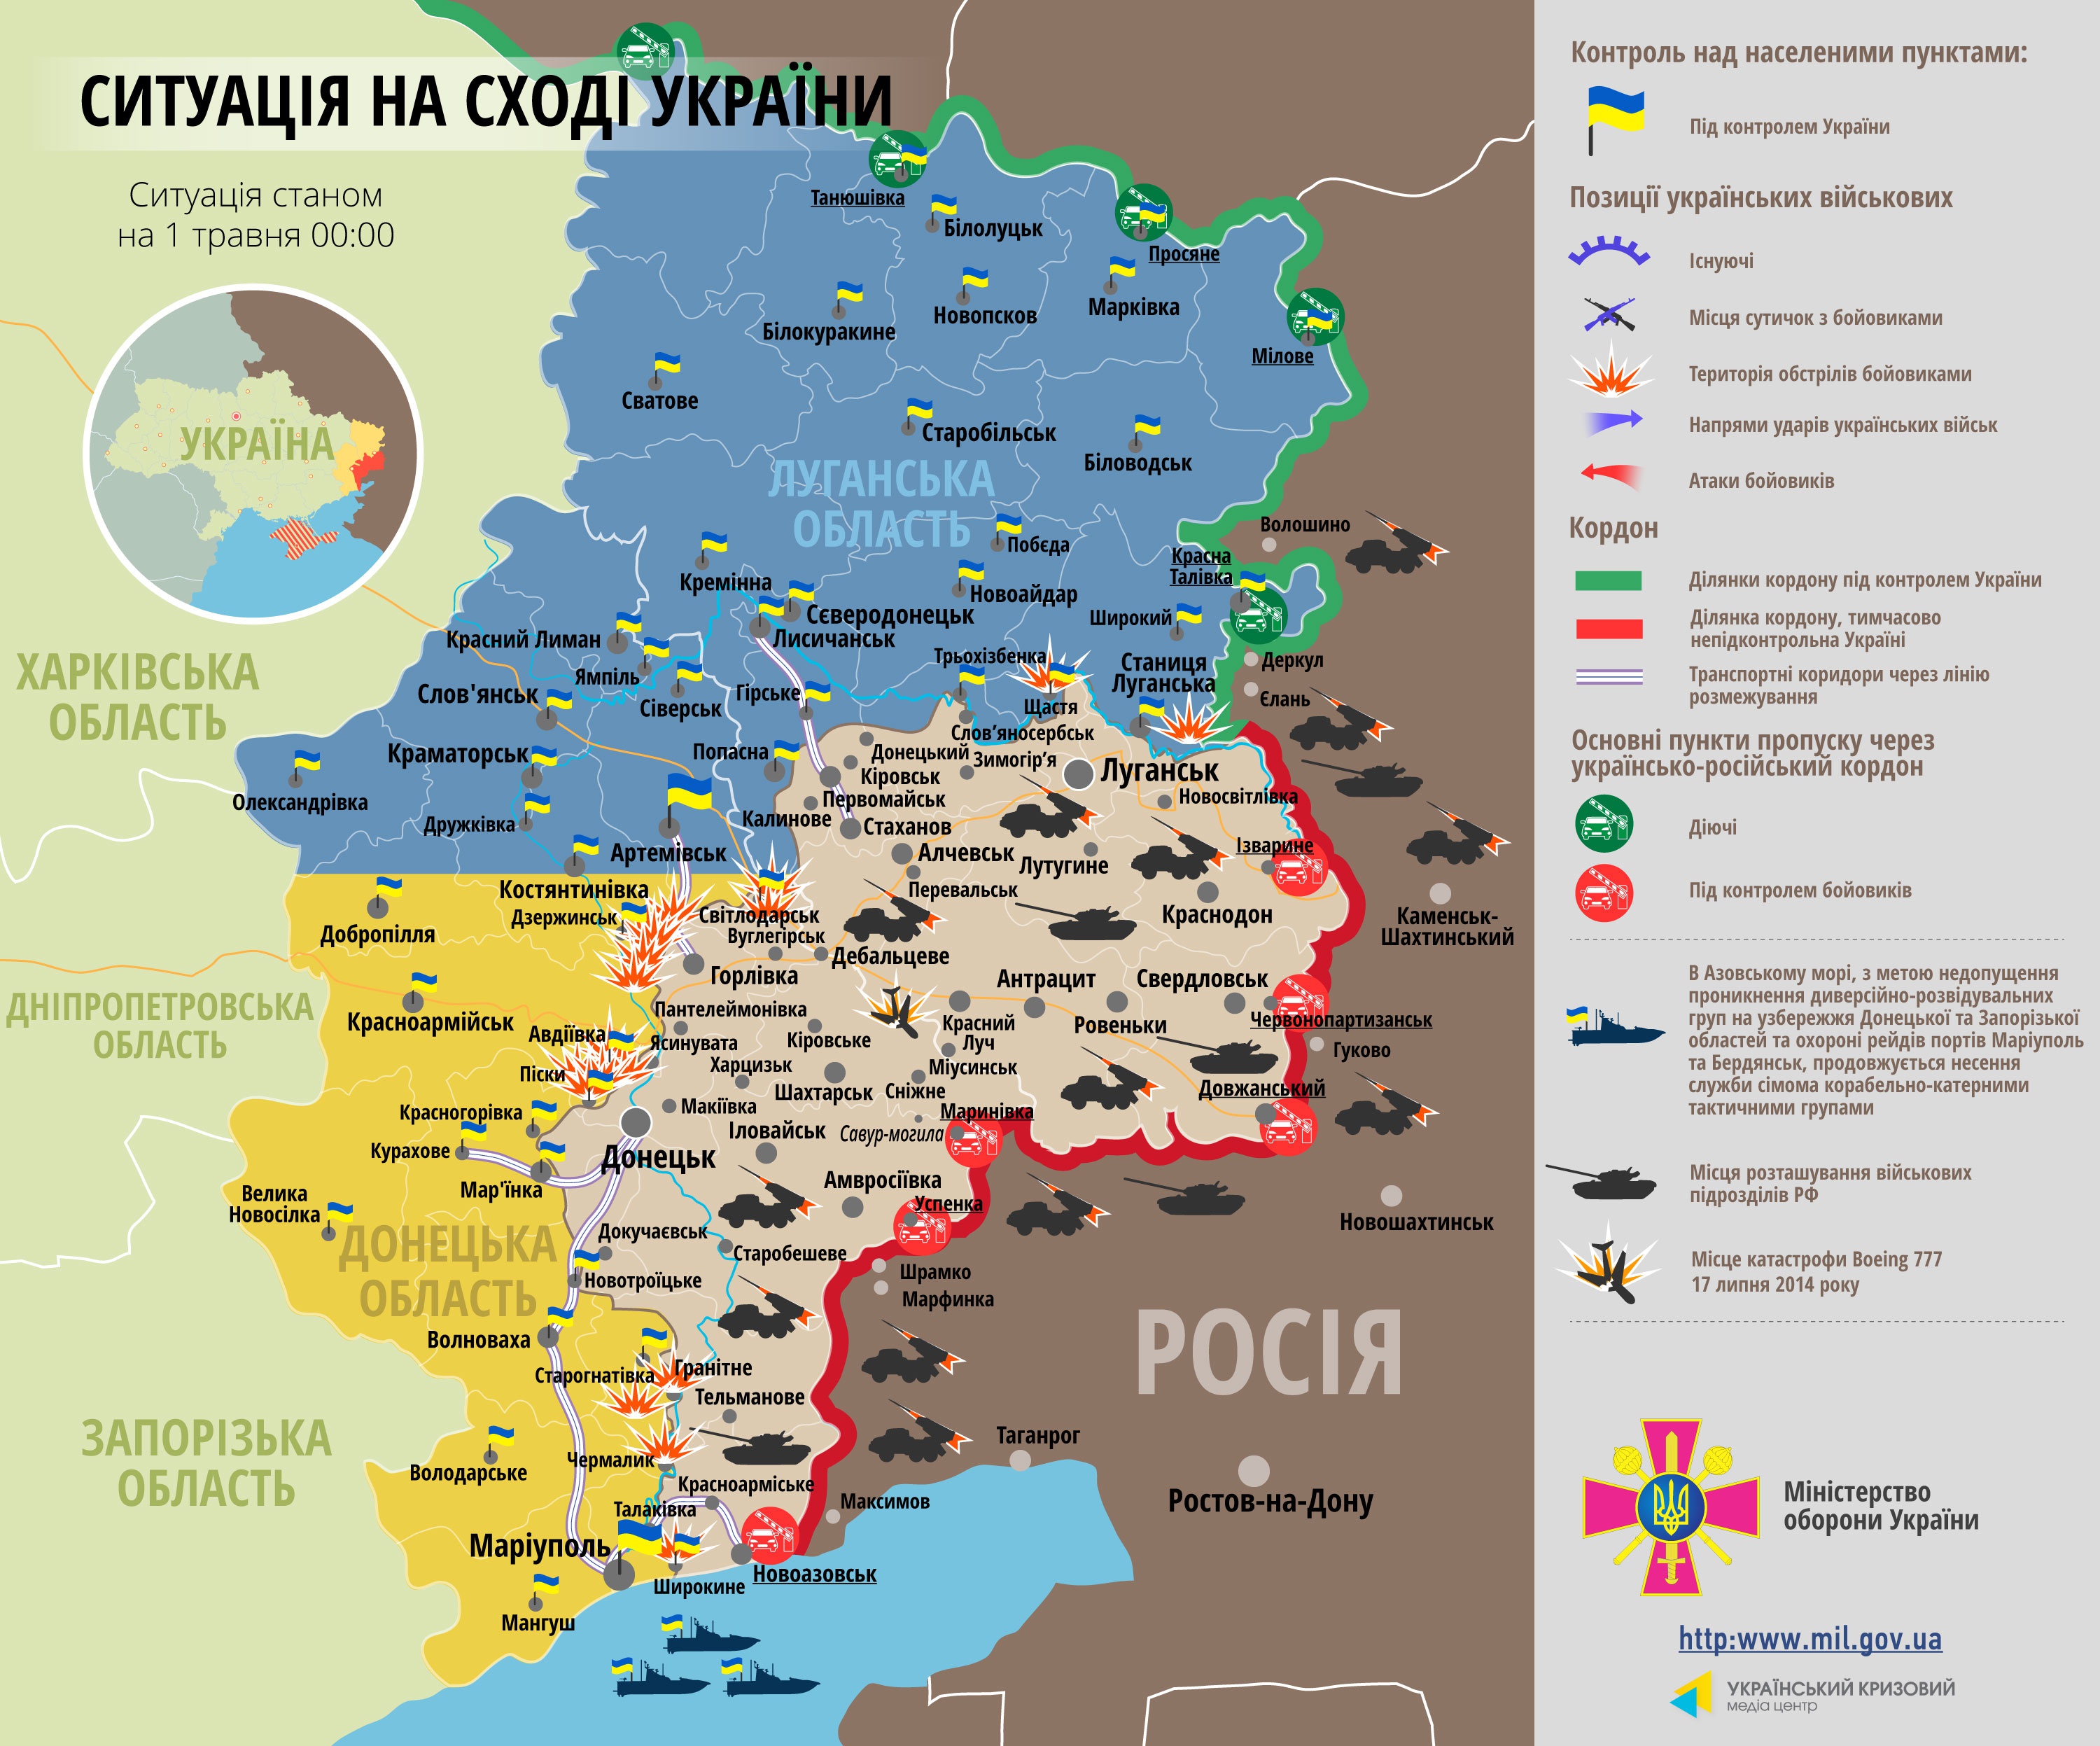 Самые резонансные события дня в Донбассе: боевики-"русификаторы" и взрывы в Донецке (фото)